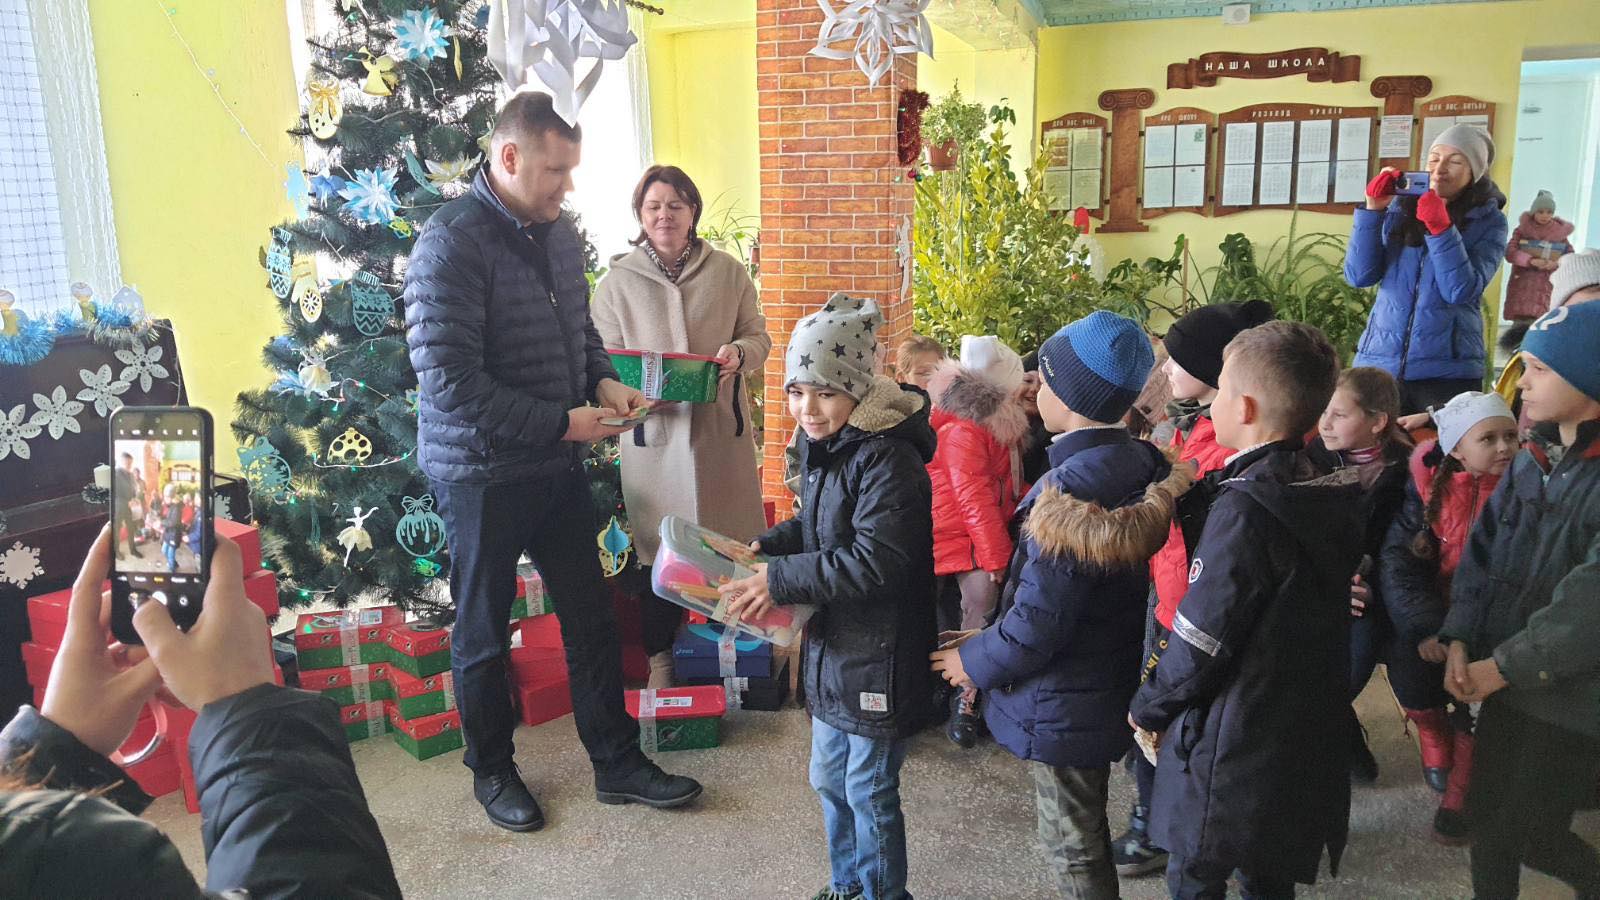 "Фонд Добра та Любові" Олександра Дубового порадував подарунками-сюрпризами до свят близько чотирьох тисяч дітей Бессарабії